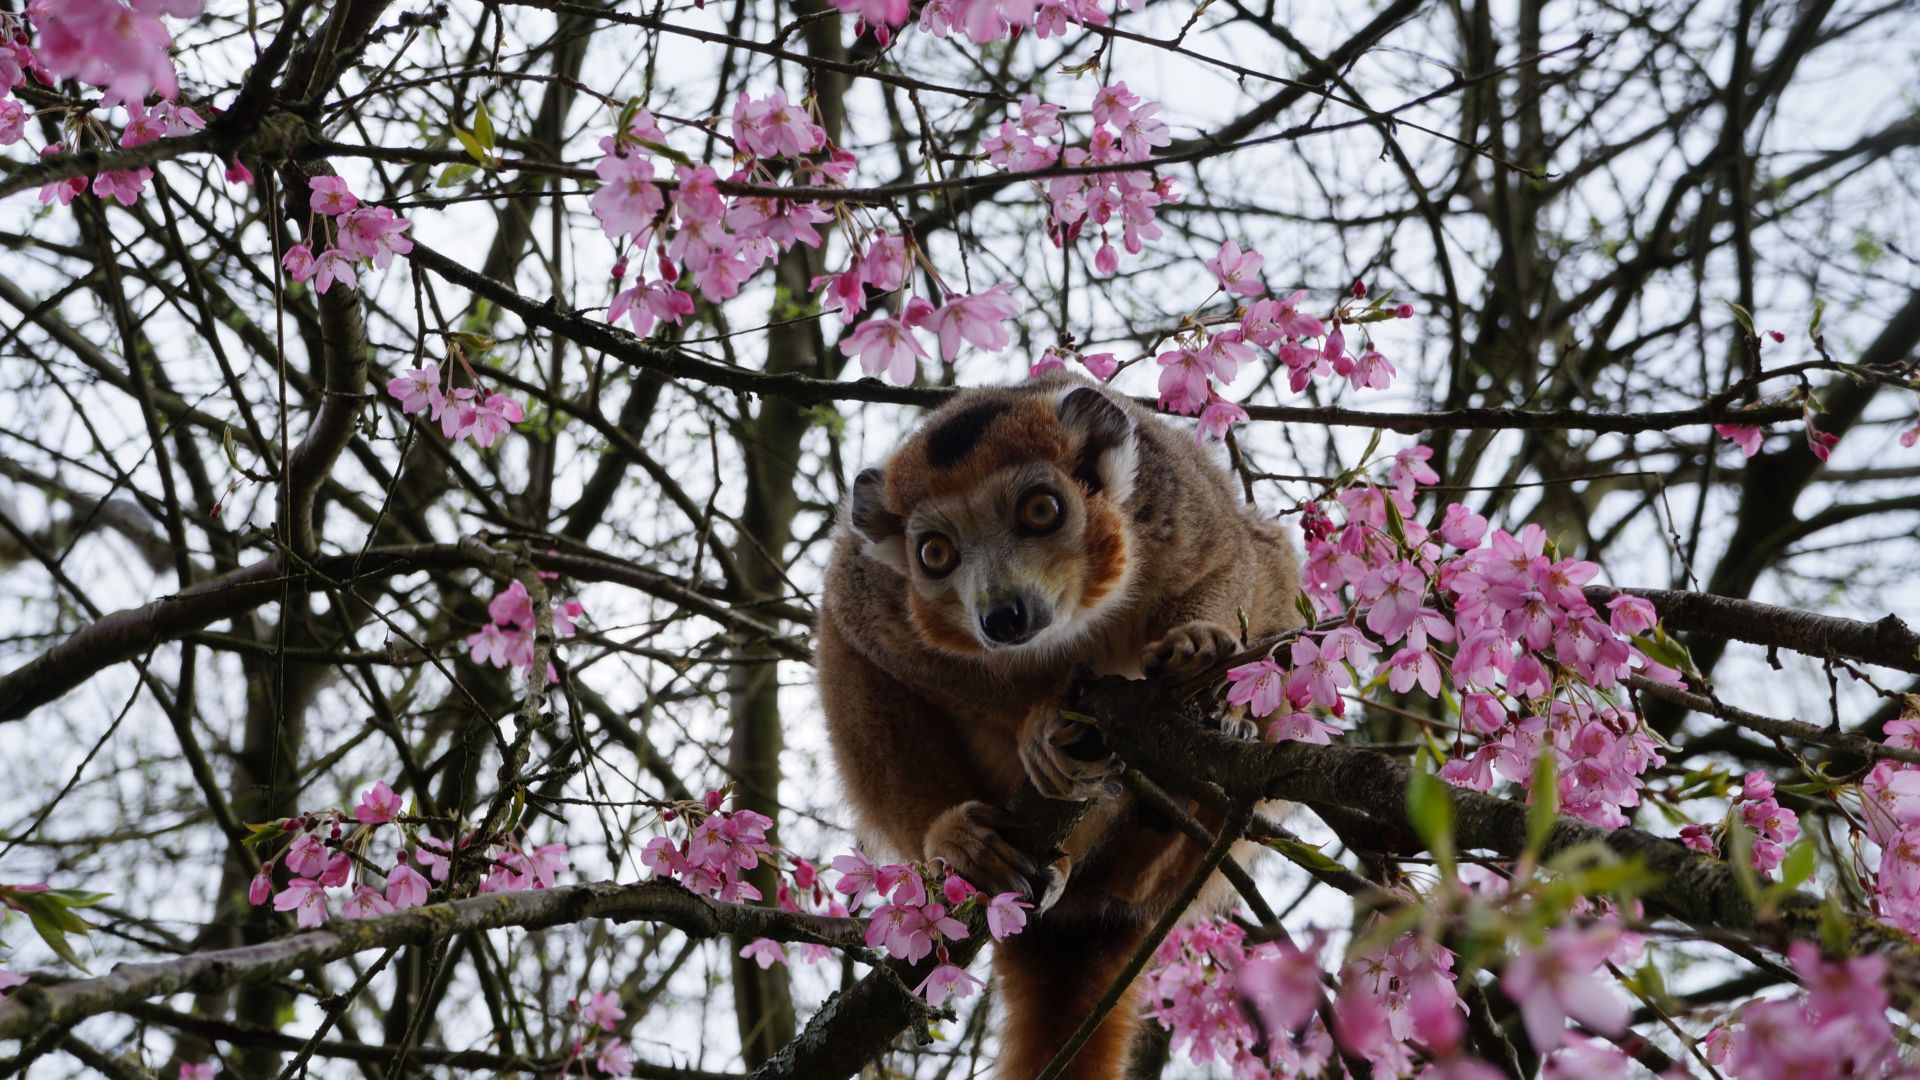 Wallpaper Monkey on tree